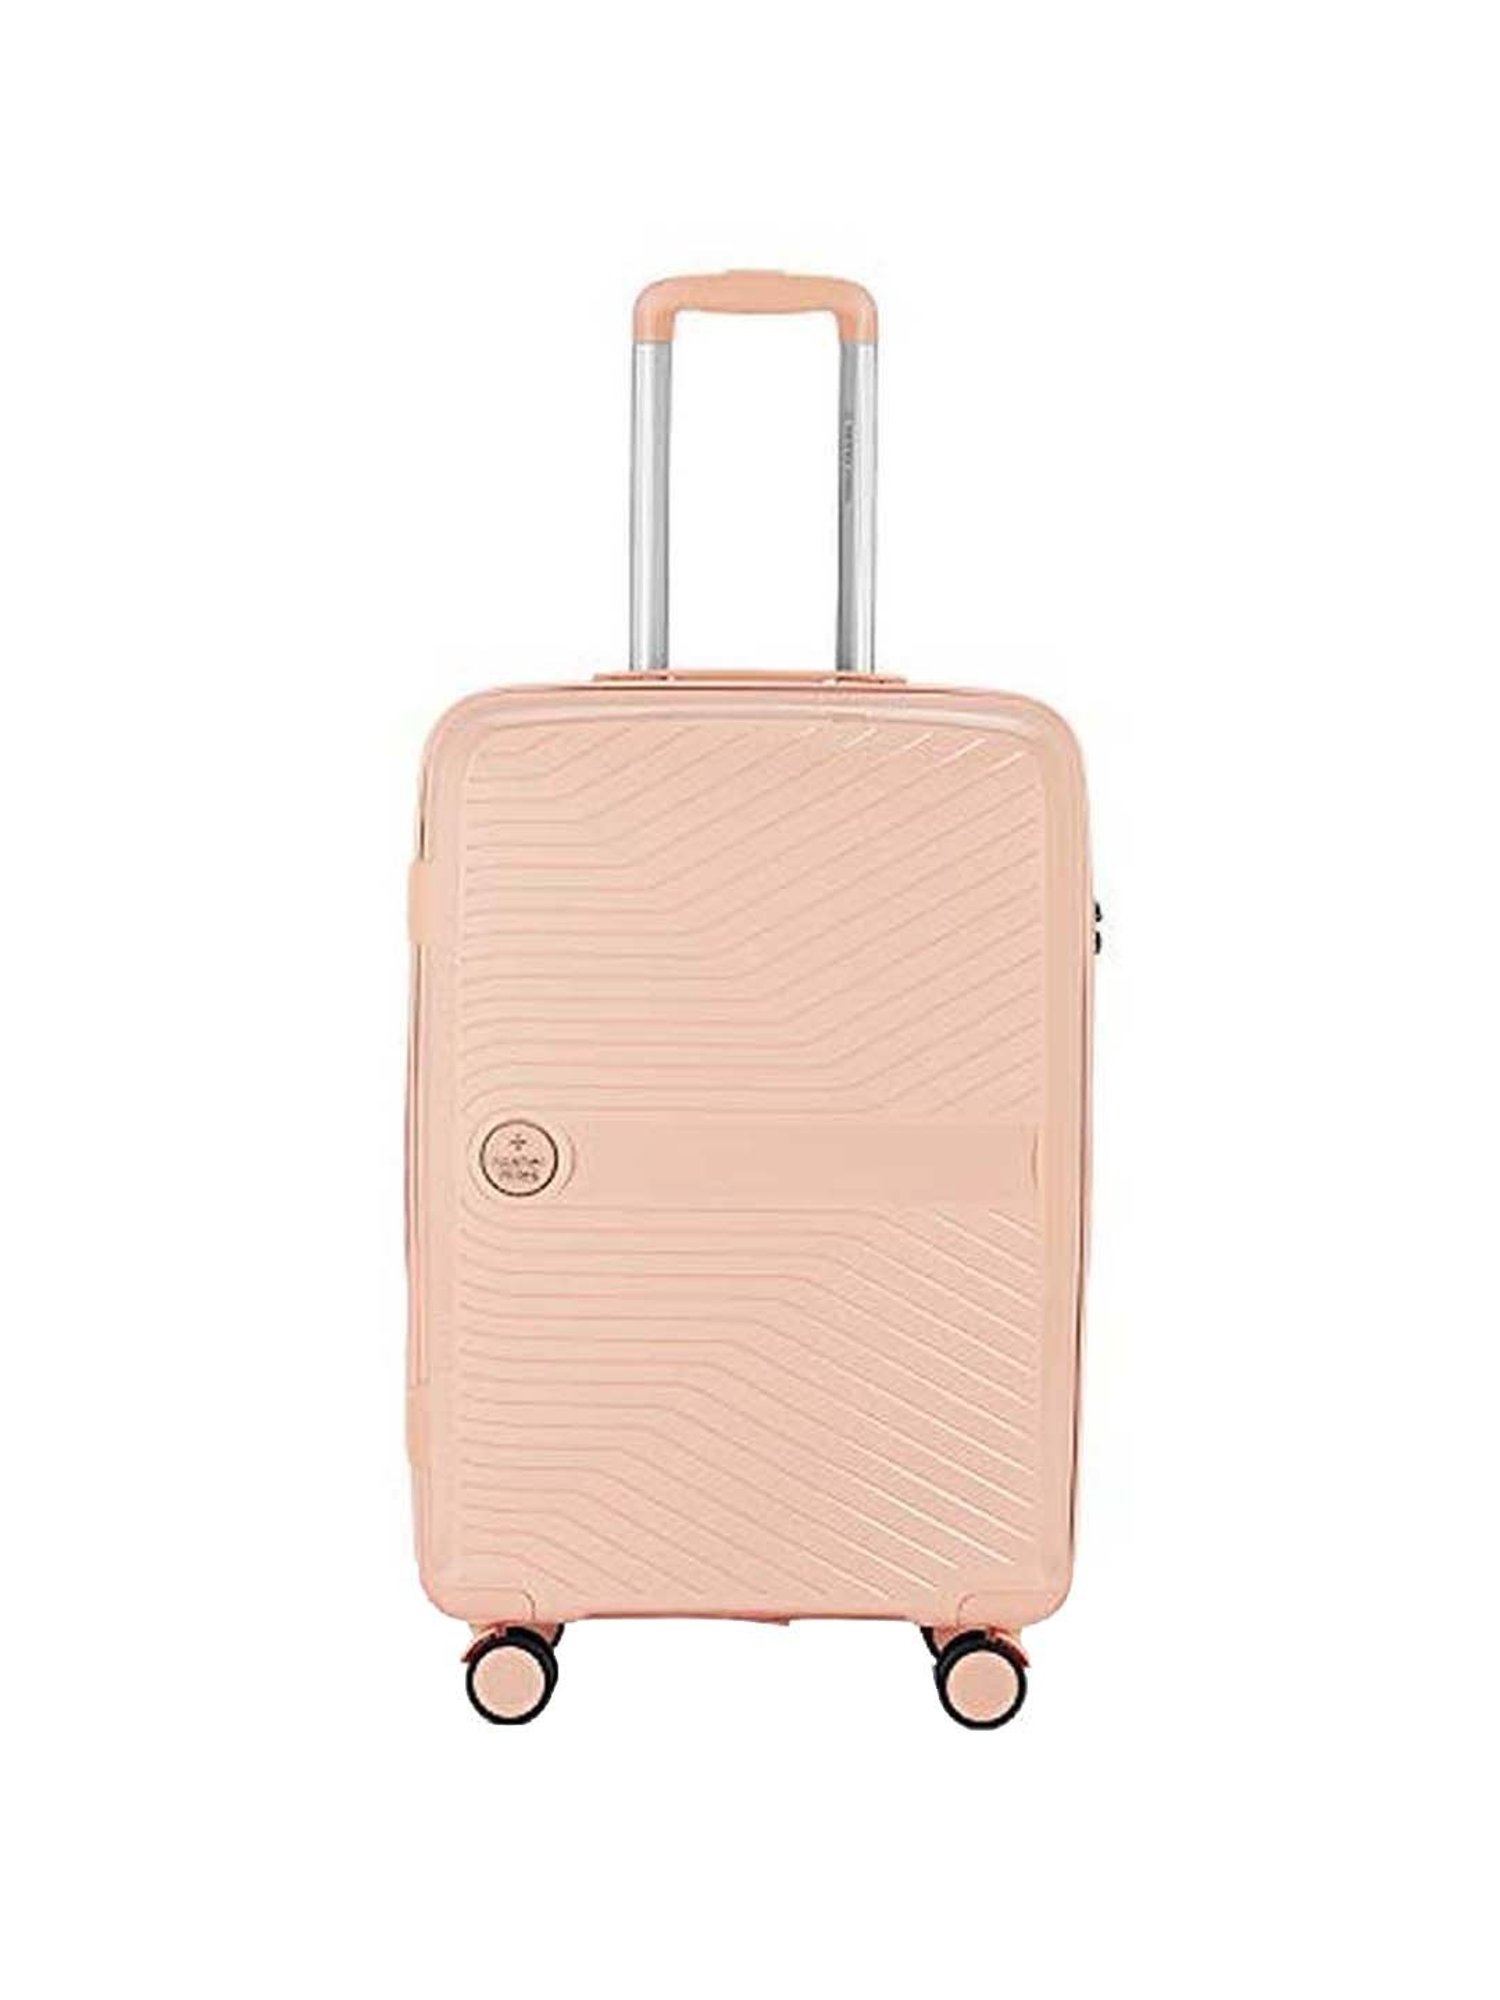 Nasher Miles Rome 20 24 InchSet of 2 Expander HardSided Polycarbonate  Luggage Bronze 55 65 cm Trolley Bag  Amazonin Fashion